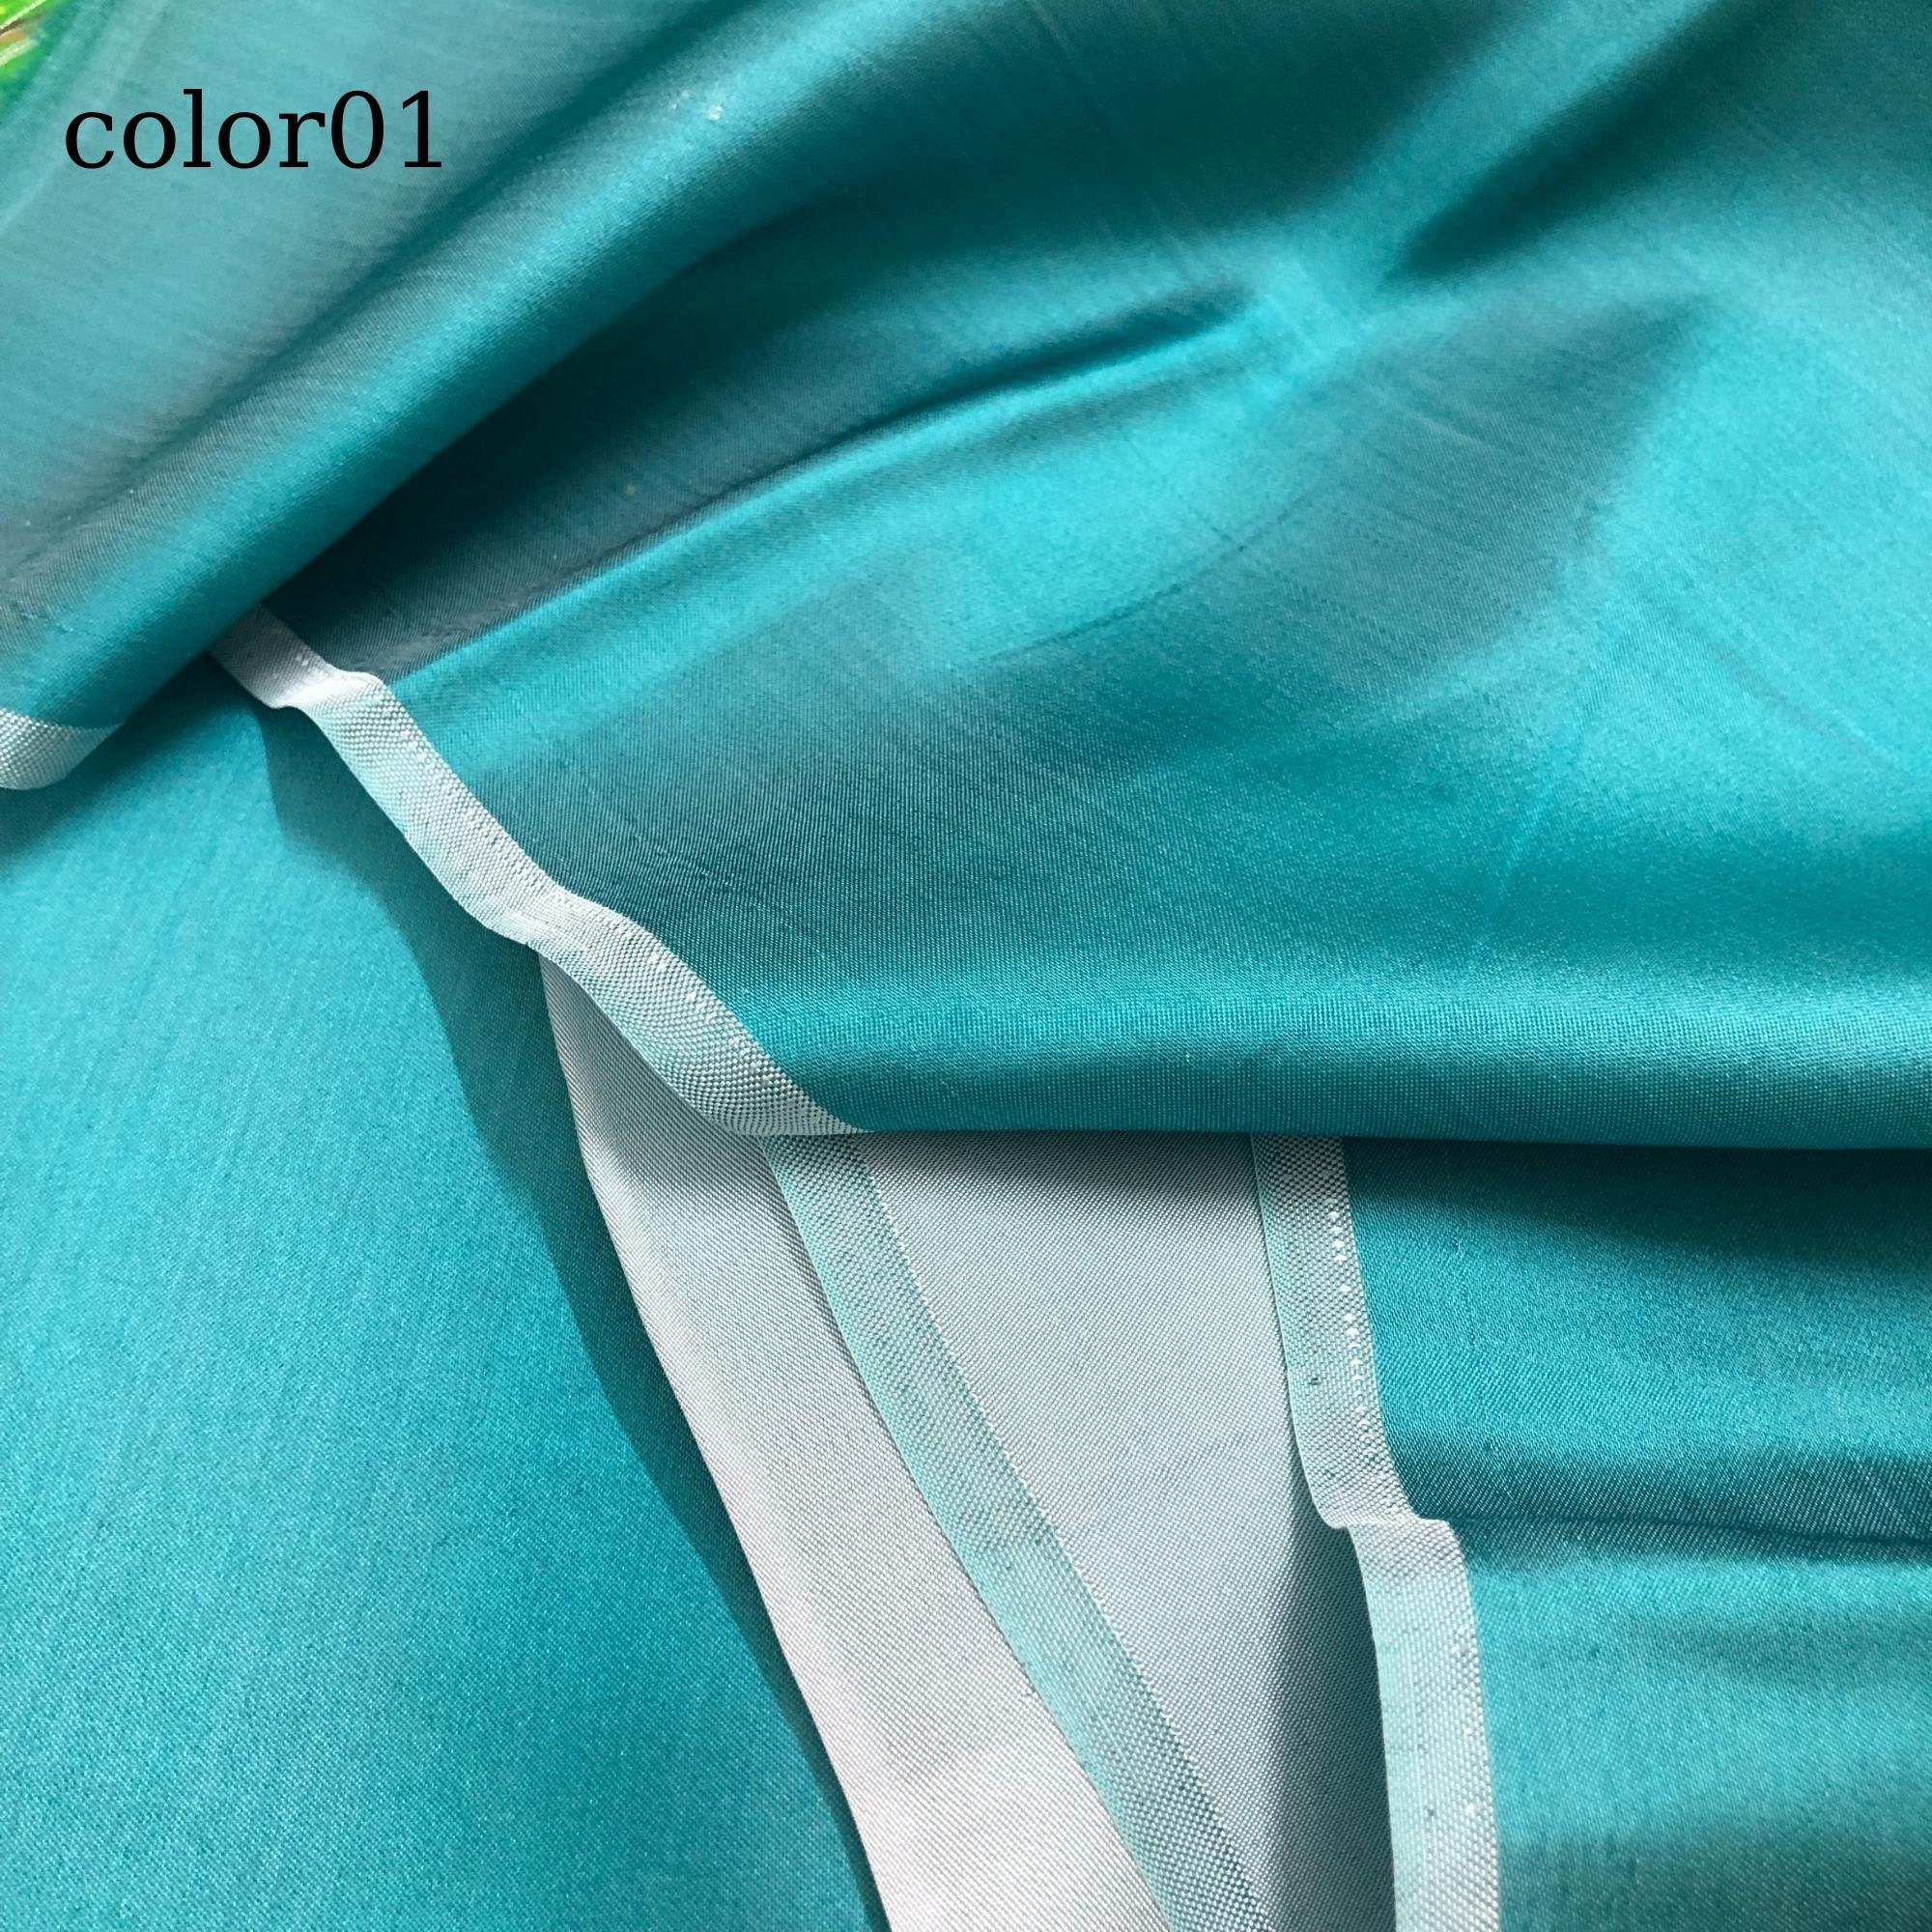 Vải Lụa Tơ Tằm Palacesik satin màu xanh lá 2 may áo dài #mềm#mượt#nhẹ#thoáng, dệt thủ công, khổ rộng 90cm